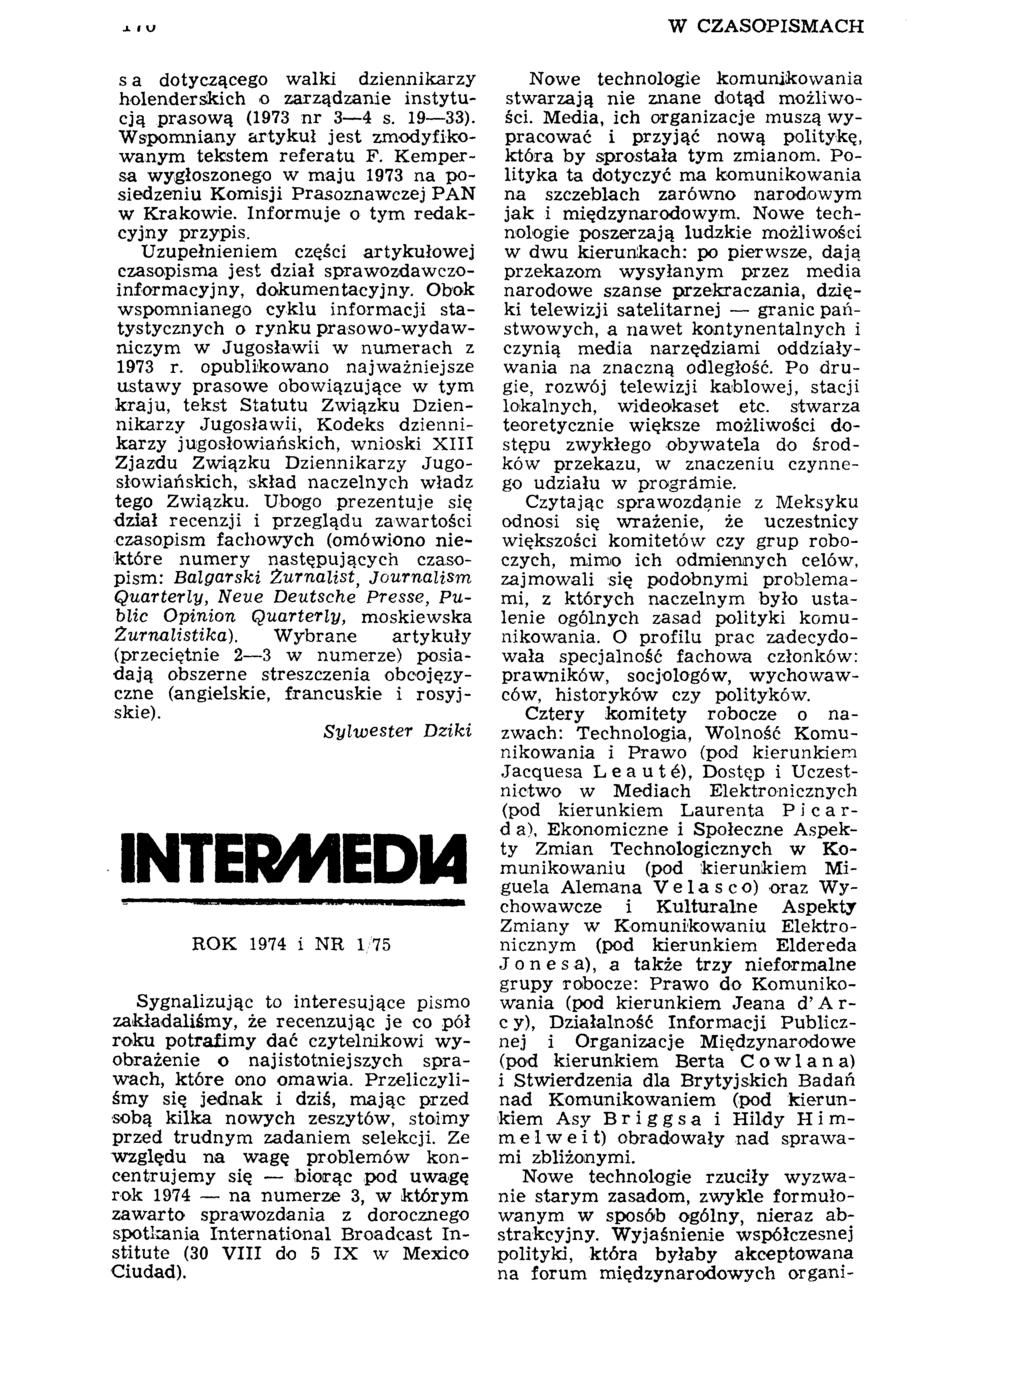 Л I \J W CZASOPISMACH s a dotyczącego walki dziennikarzy holenderskich o zarządzanie instytucją prasową (1973 nr 3 4 s. 19 33). Wspomniany artykuł jest zmodyfikowanym tekstem referatu F.